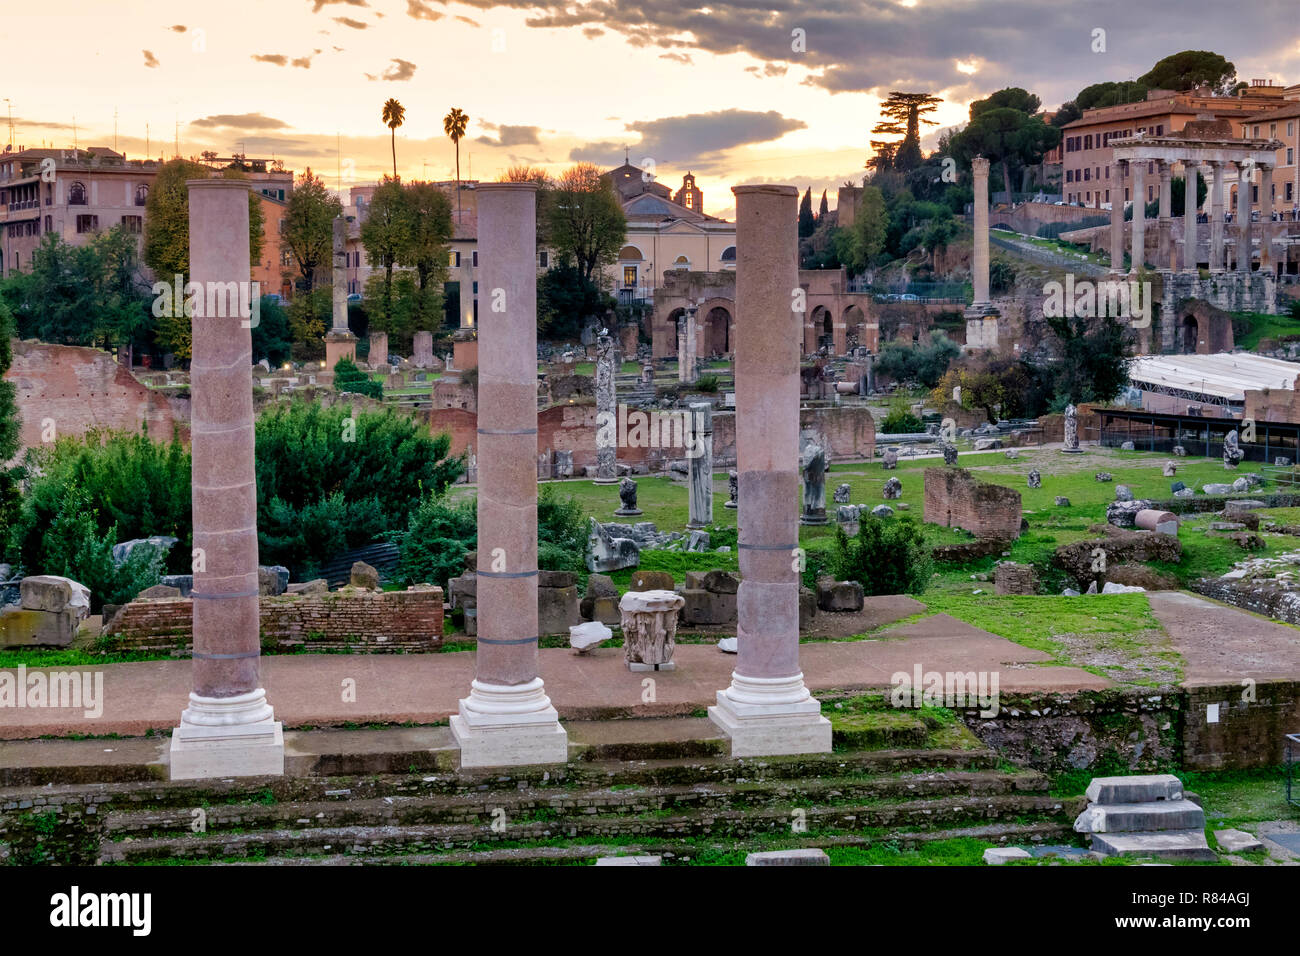 Roman forum at sunset, Rome, Italy Stock Photo